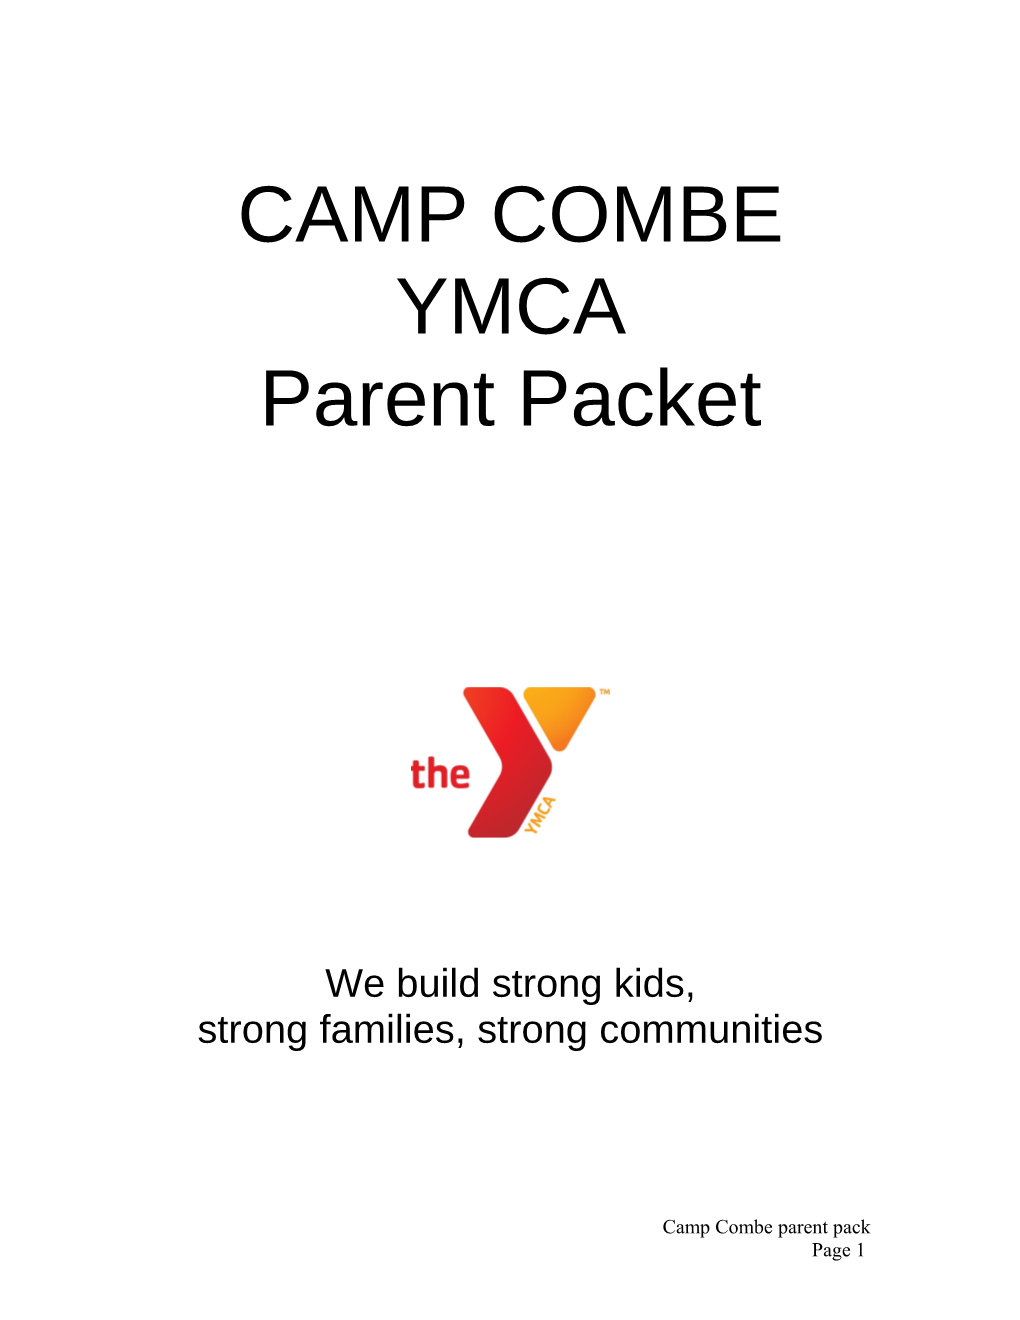 Camp Combe Ymca